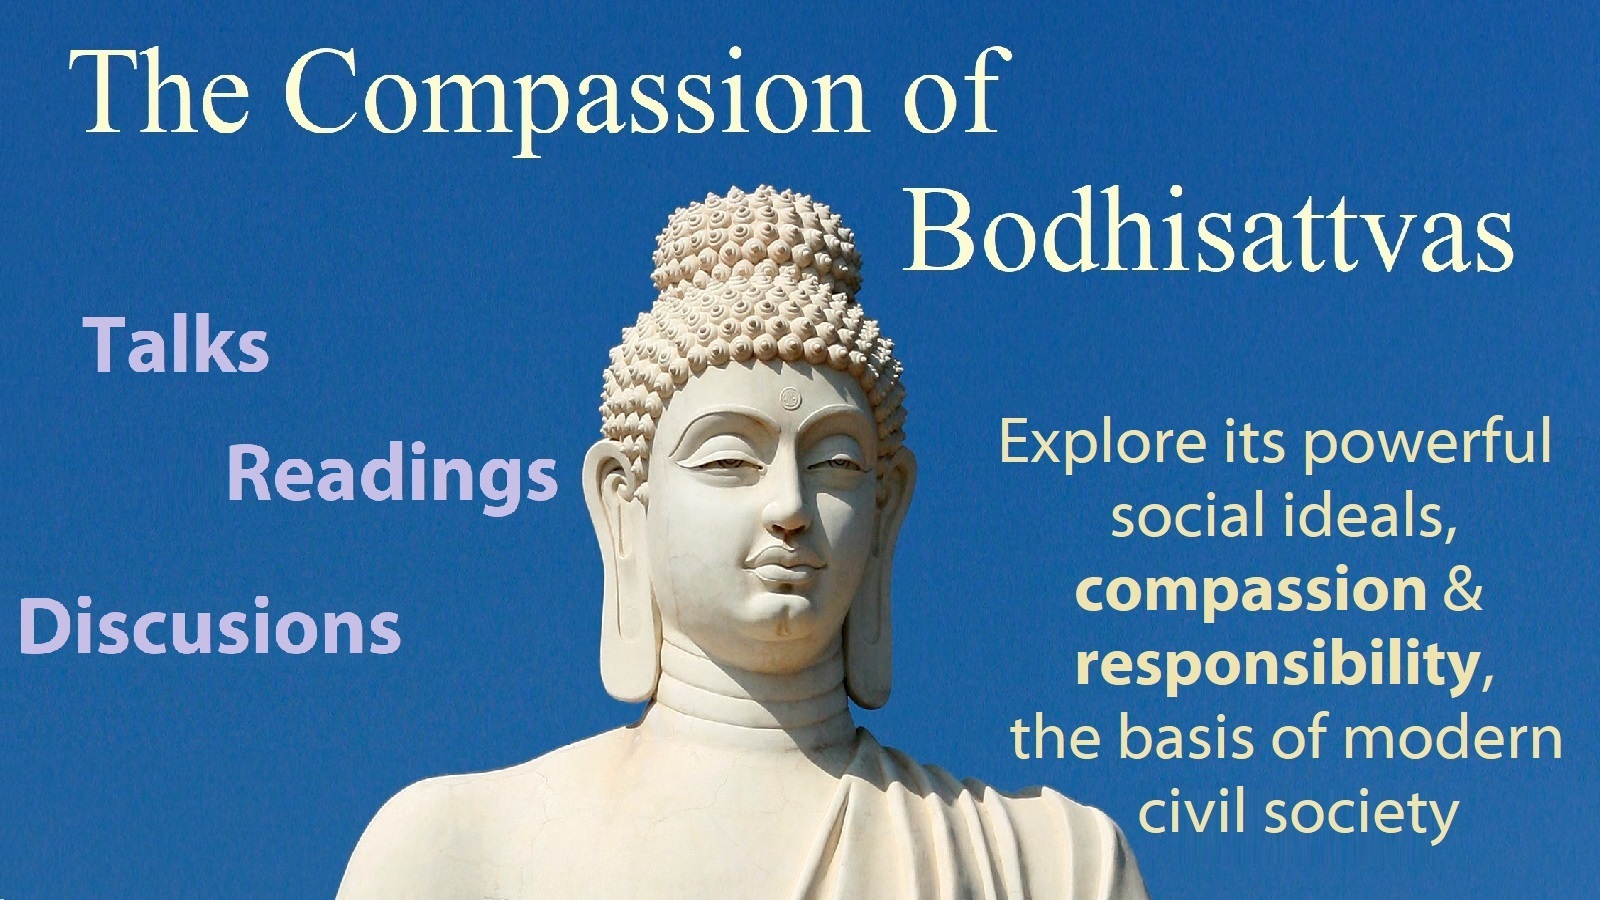 Talks and readings on "The Compassion of Bodhisattvas", London, England, United Kingdom